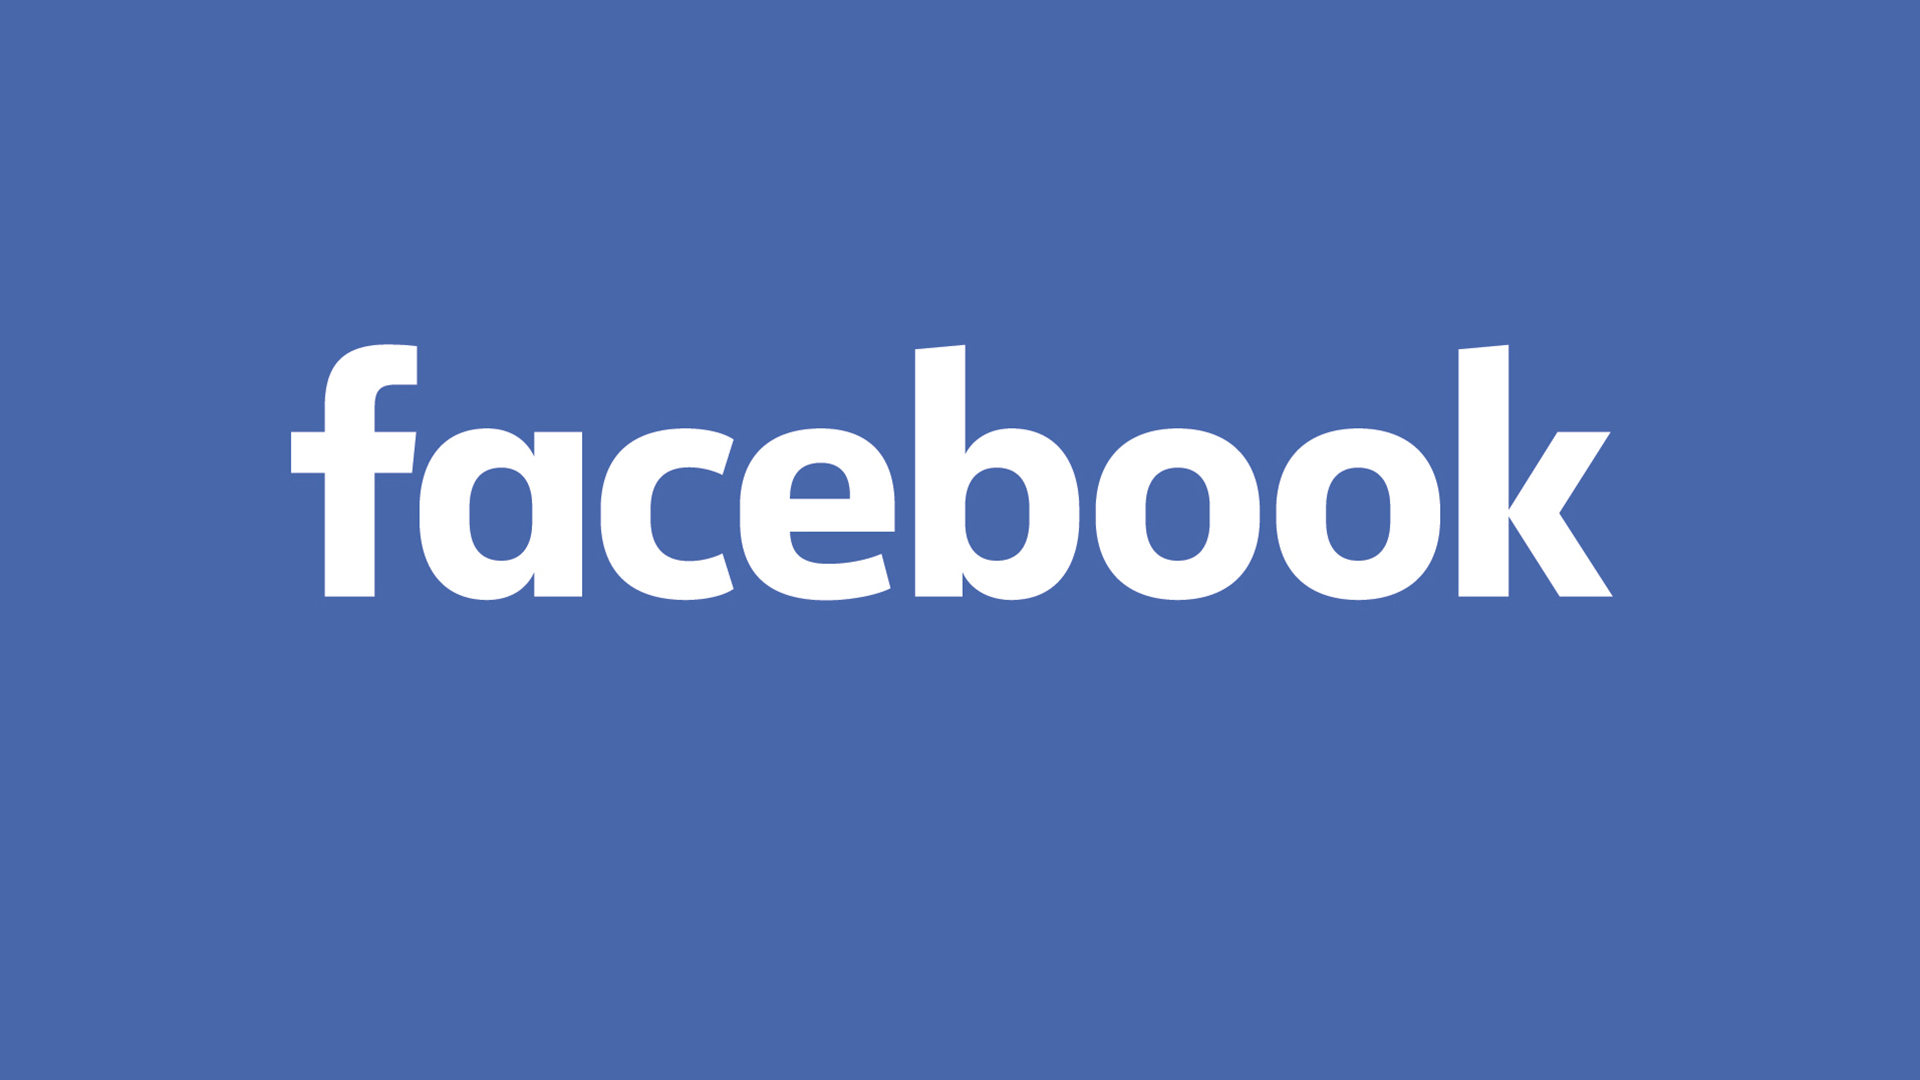 Facebook logo 2015